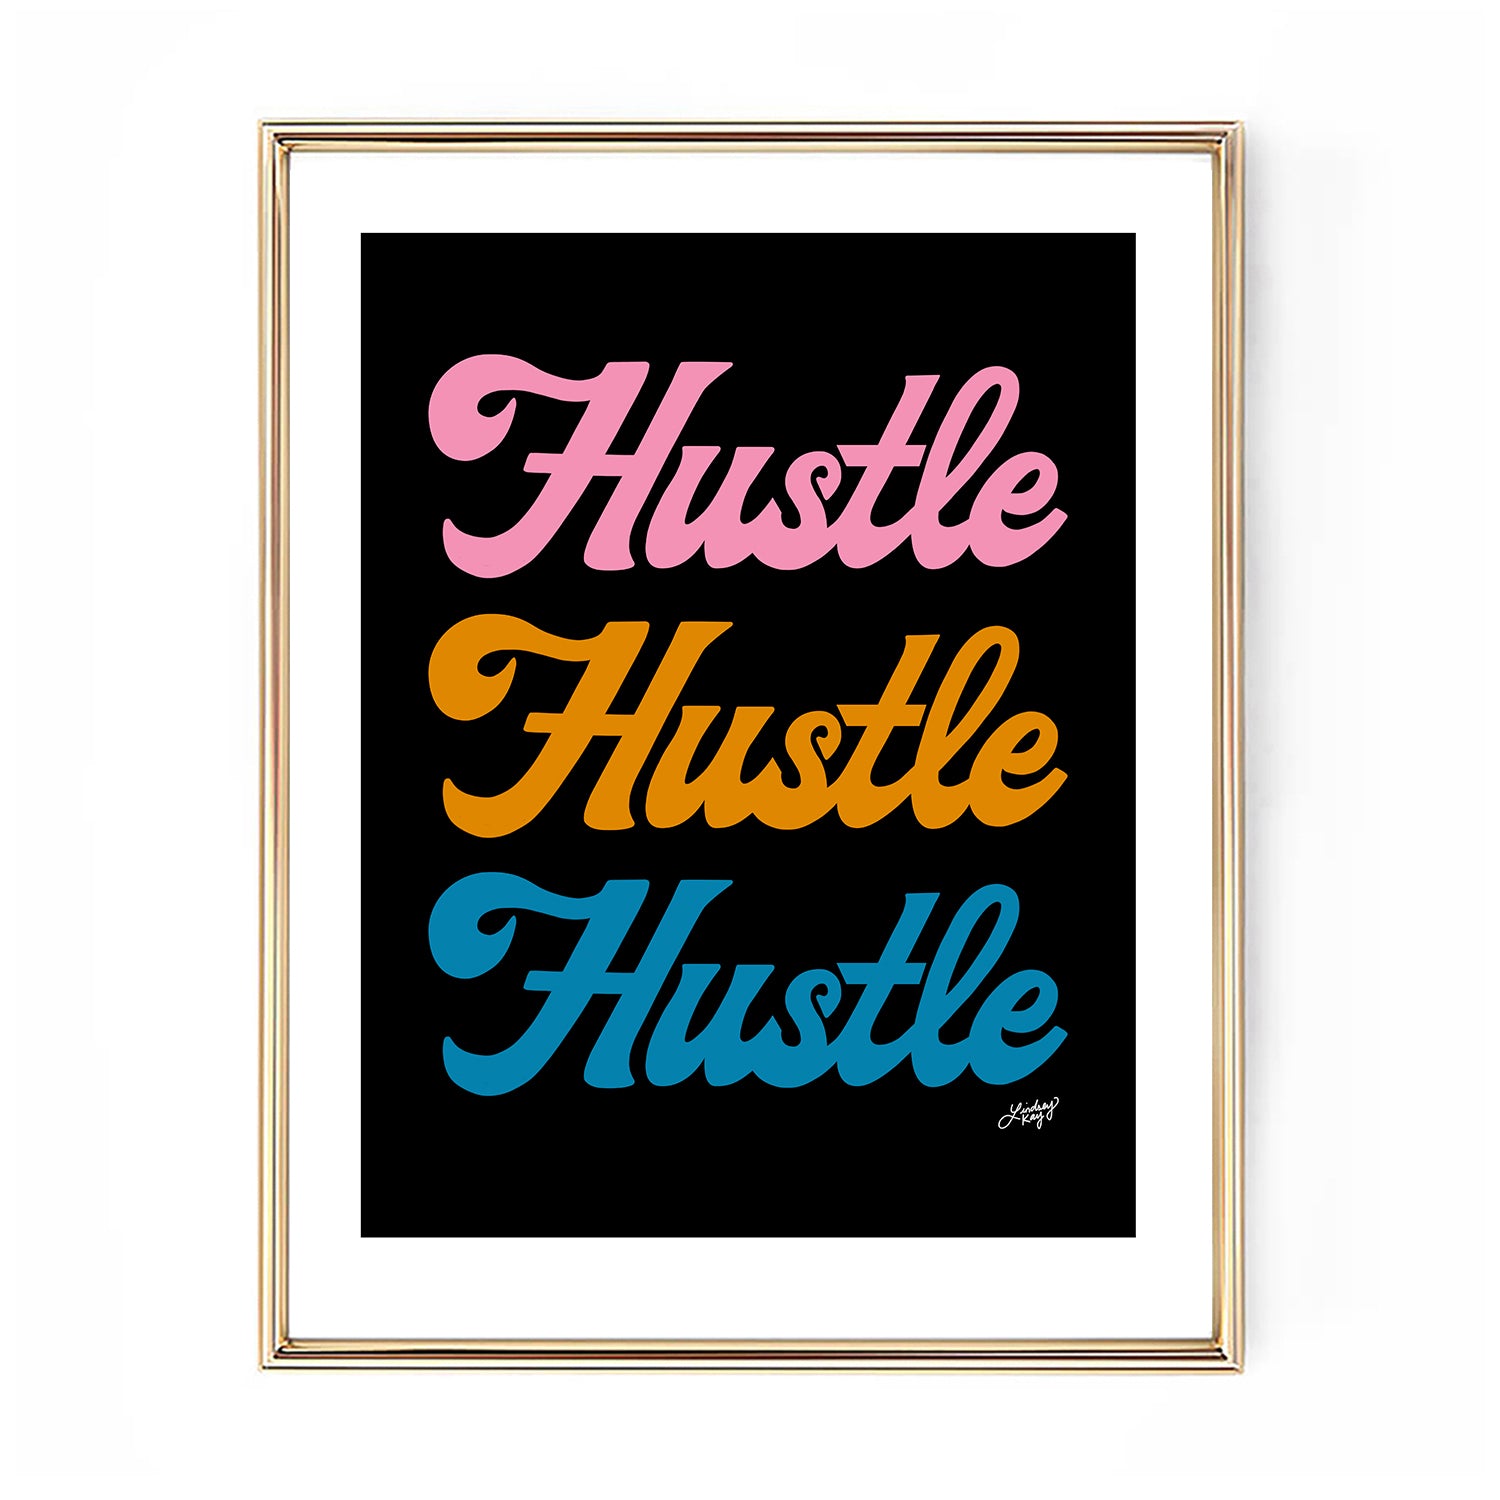 Hustle Hustle Hustle (Paleta Retro) - Impresión de arte